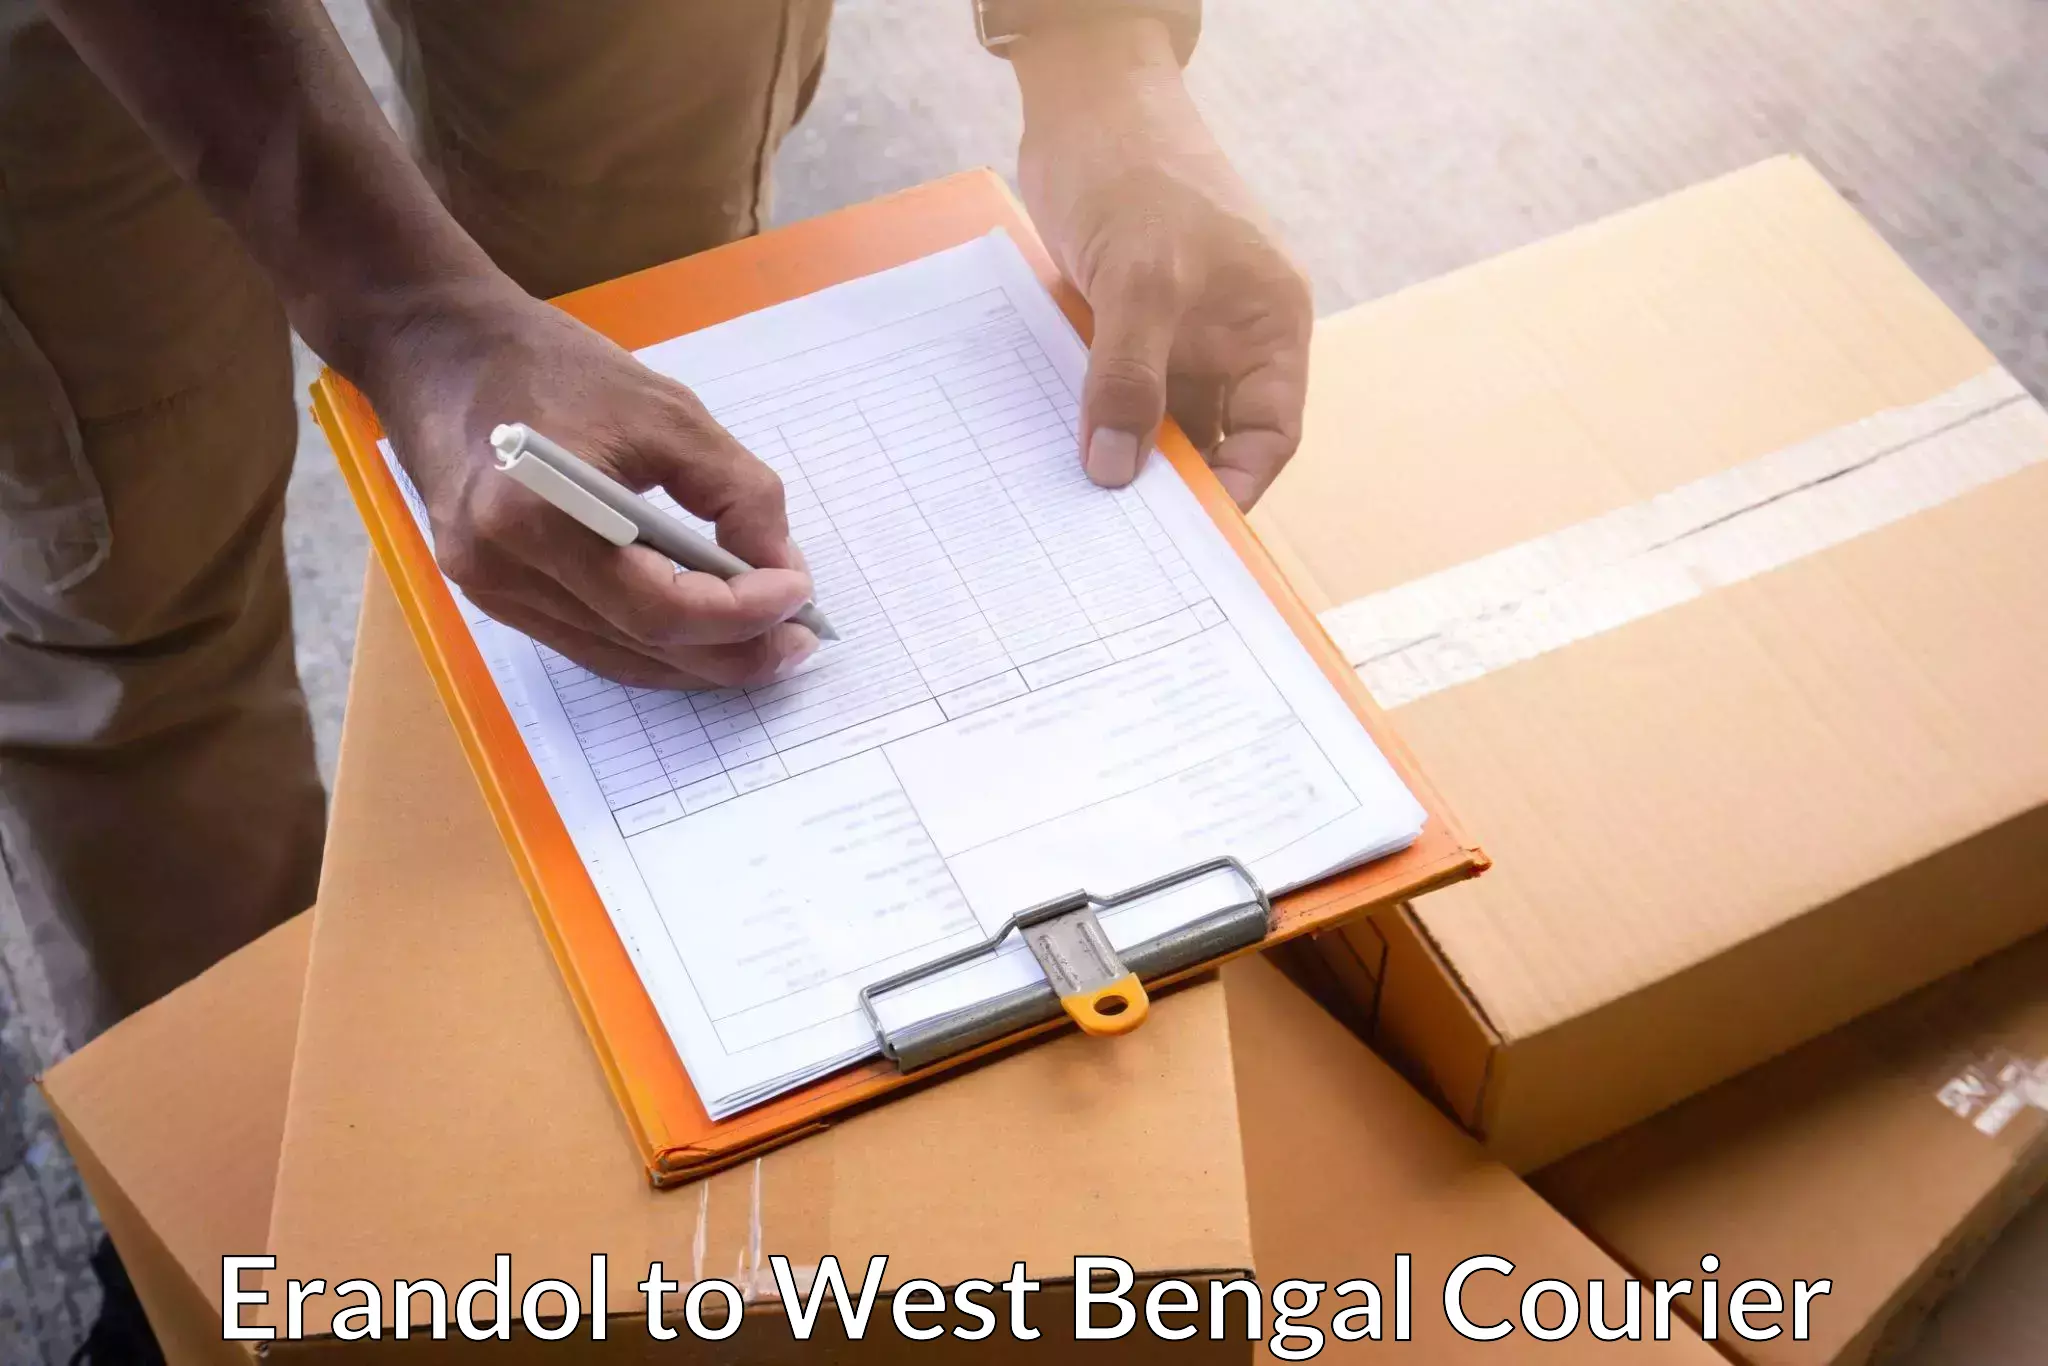 Urgent courier needs Erandol to South 24 Parganas